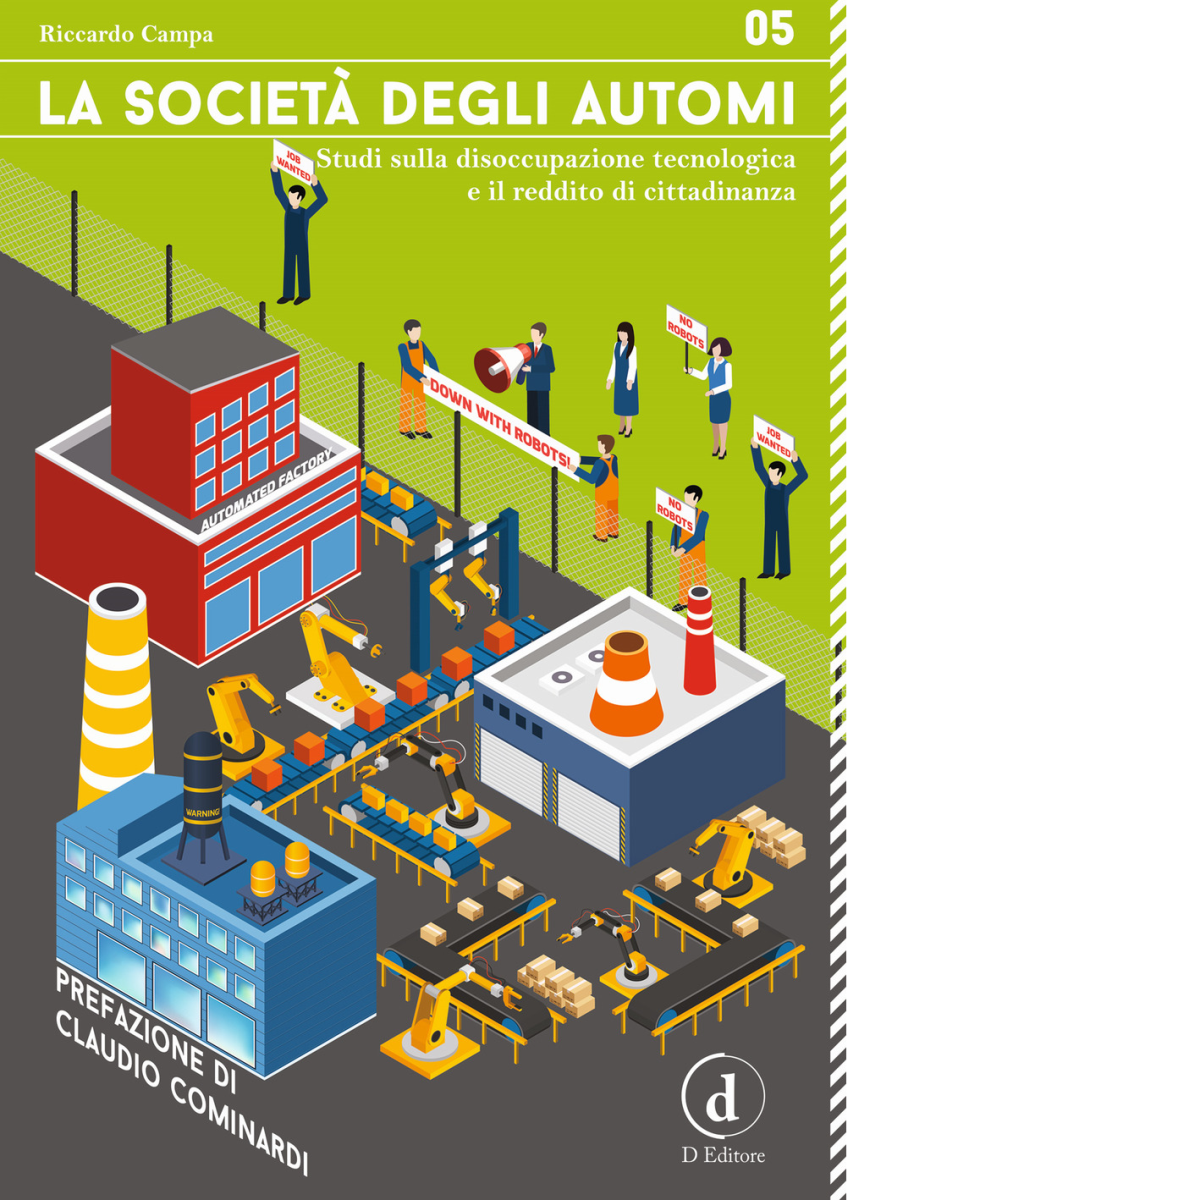 La societ? degli automi - Riccardo Campa - D Editore, 2017 libro usato